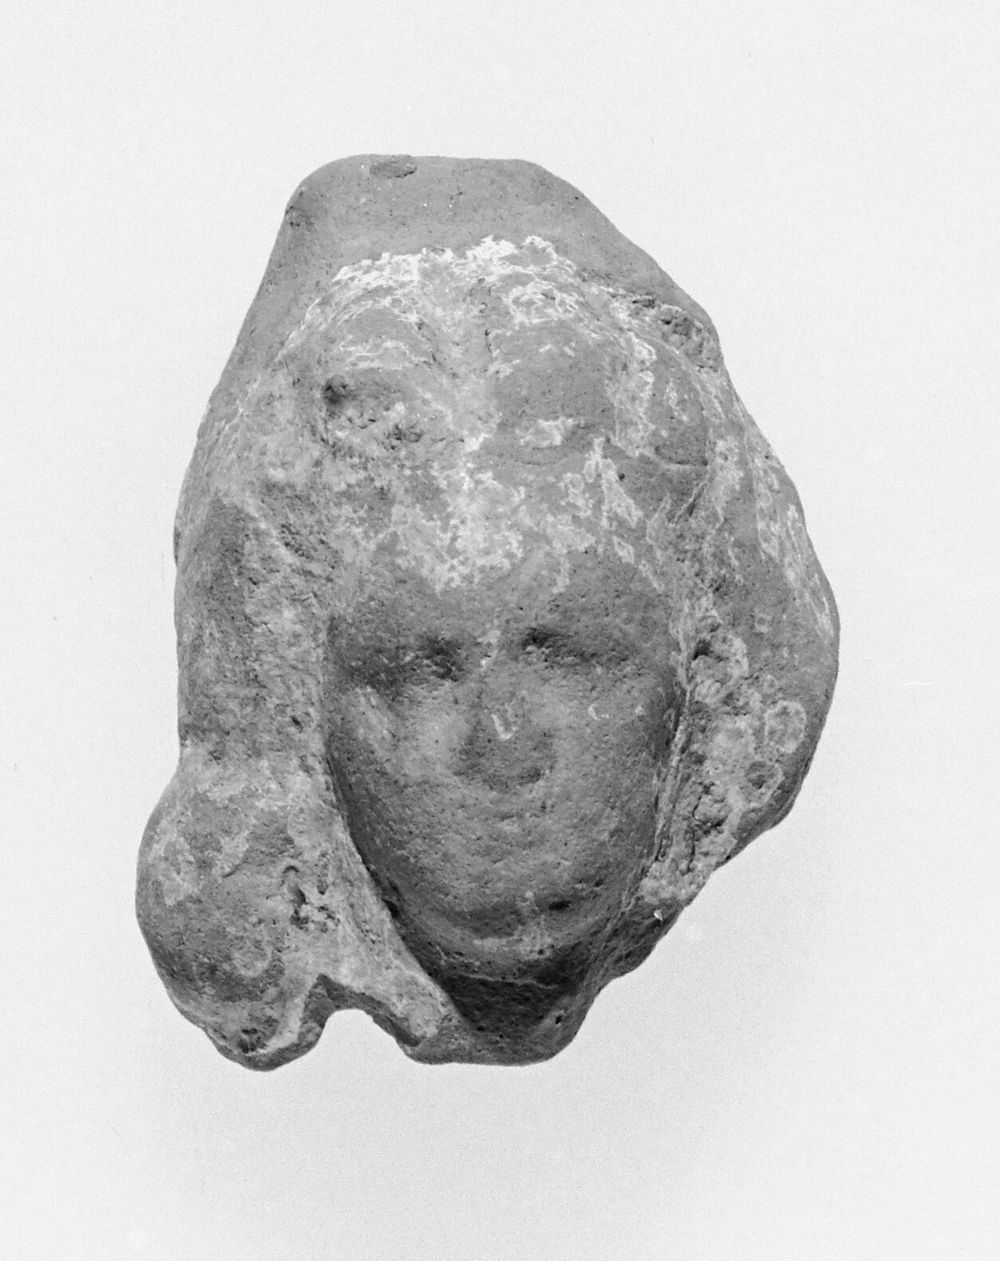 Female Head